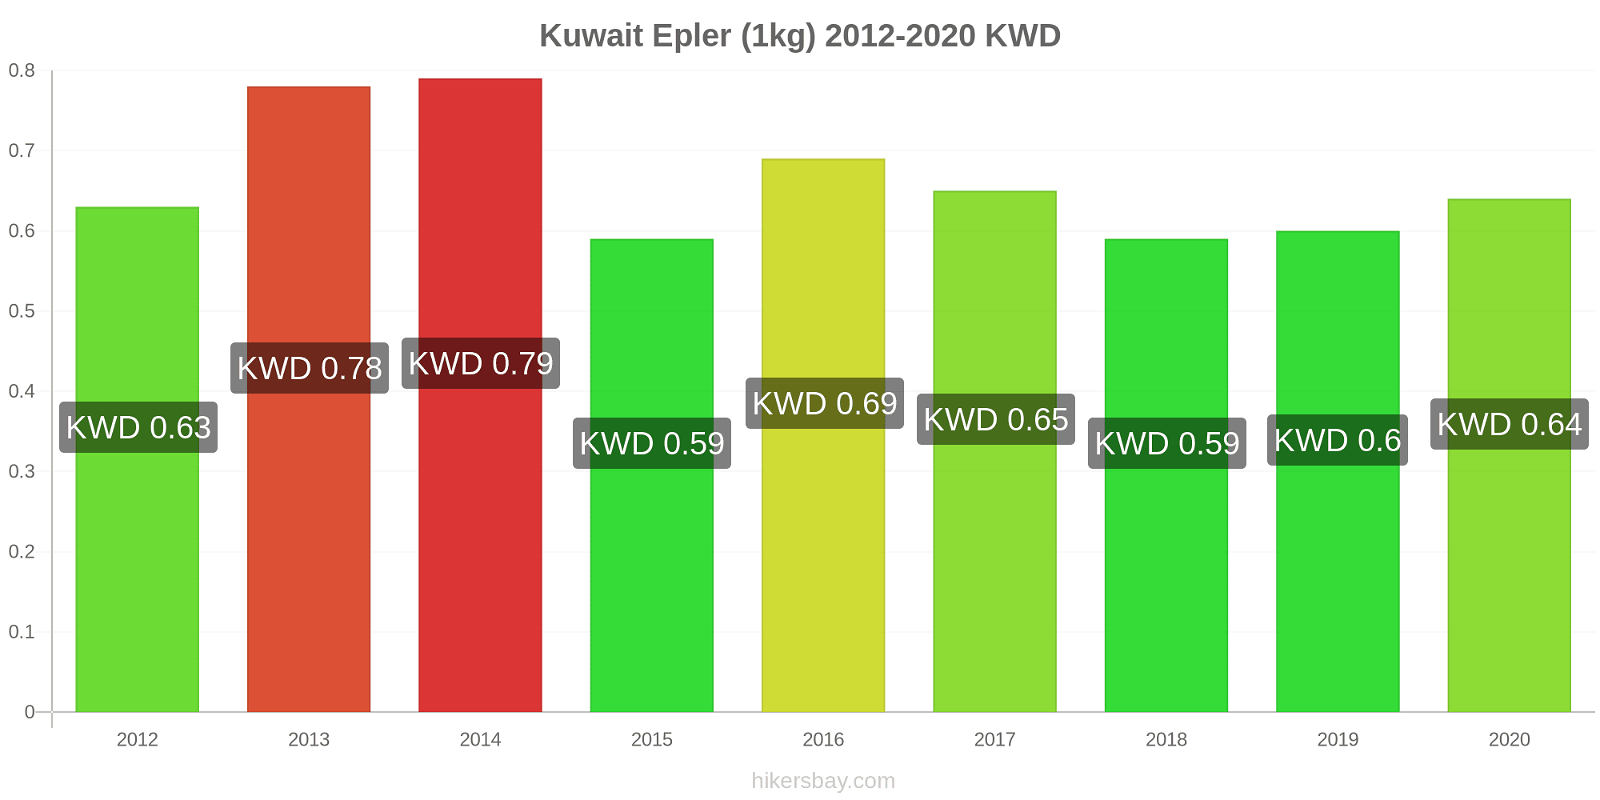 Kuwait prisendringer Epler (1kg) hikersbay.com